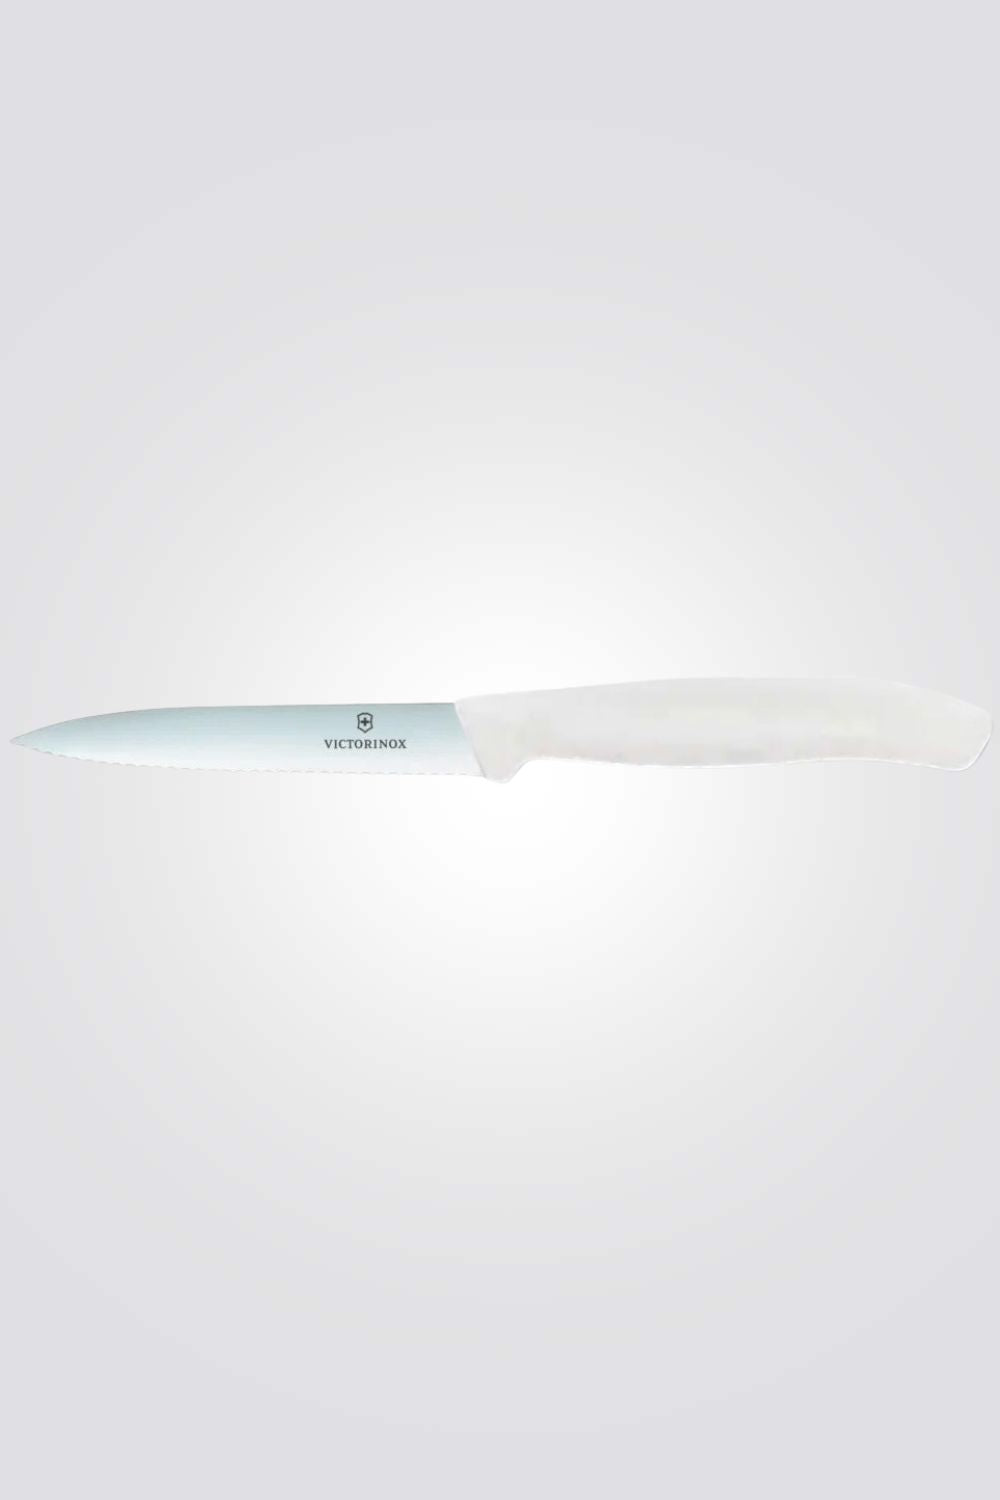 סכין ירקות שוויצרית, להב שפיץ משונן לבן